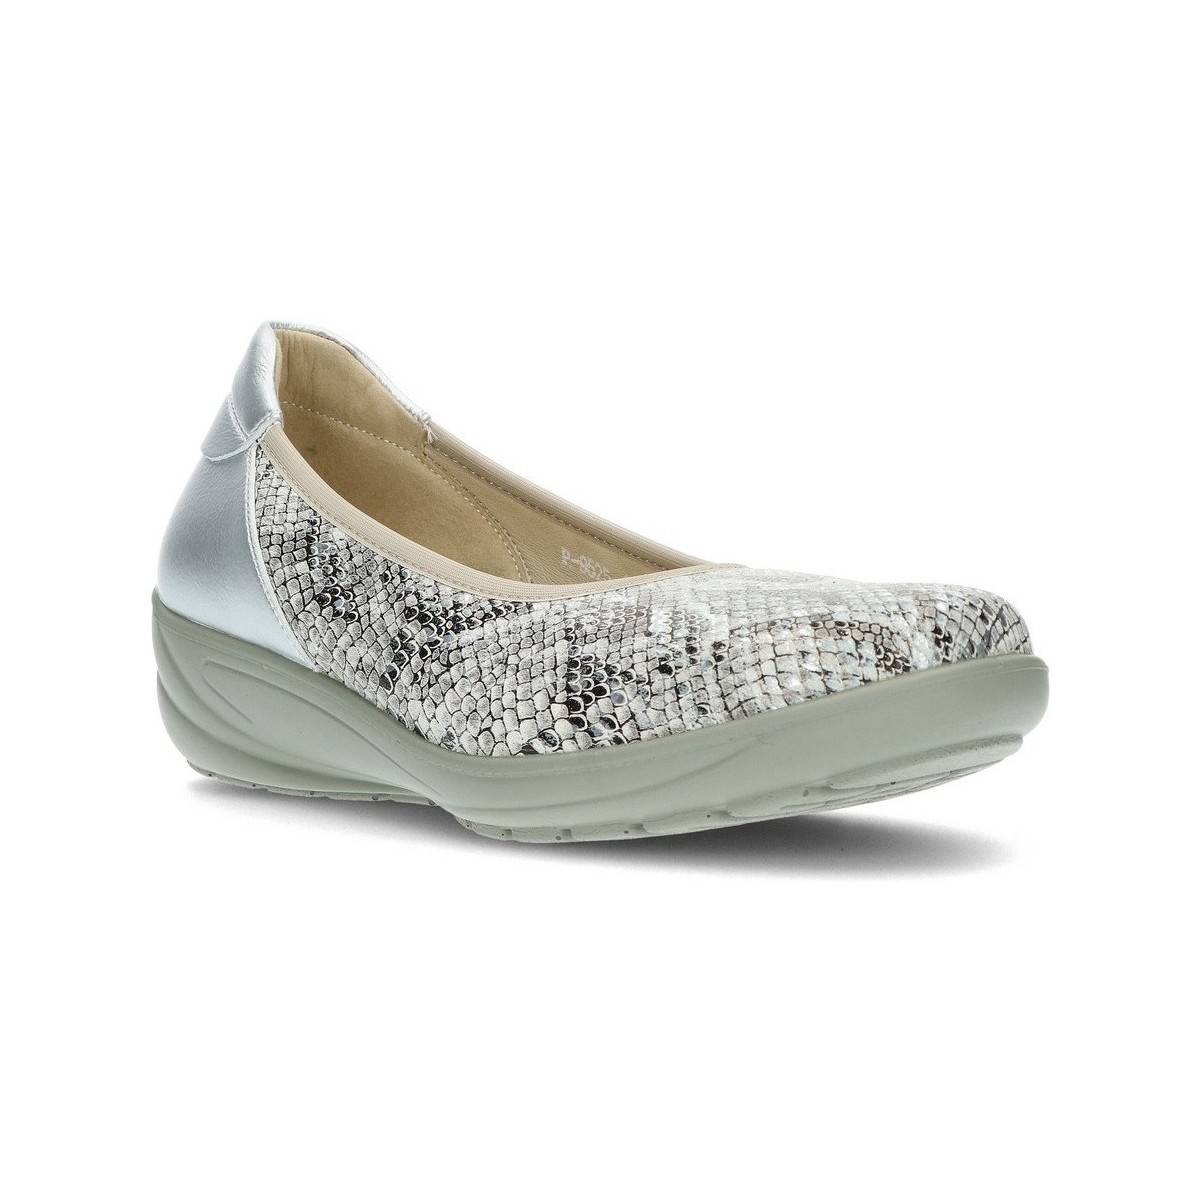 Sapatos Mulher Sapatos & Richelieu G Comfort G CONFORTO BALERINA CONFORTÁVEL P9525 Branco